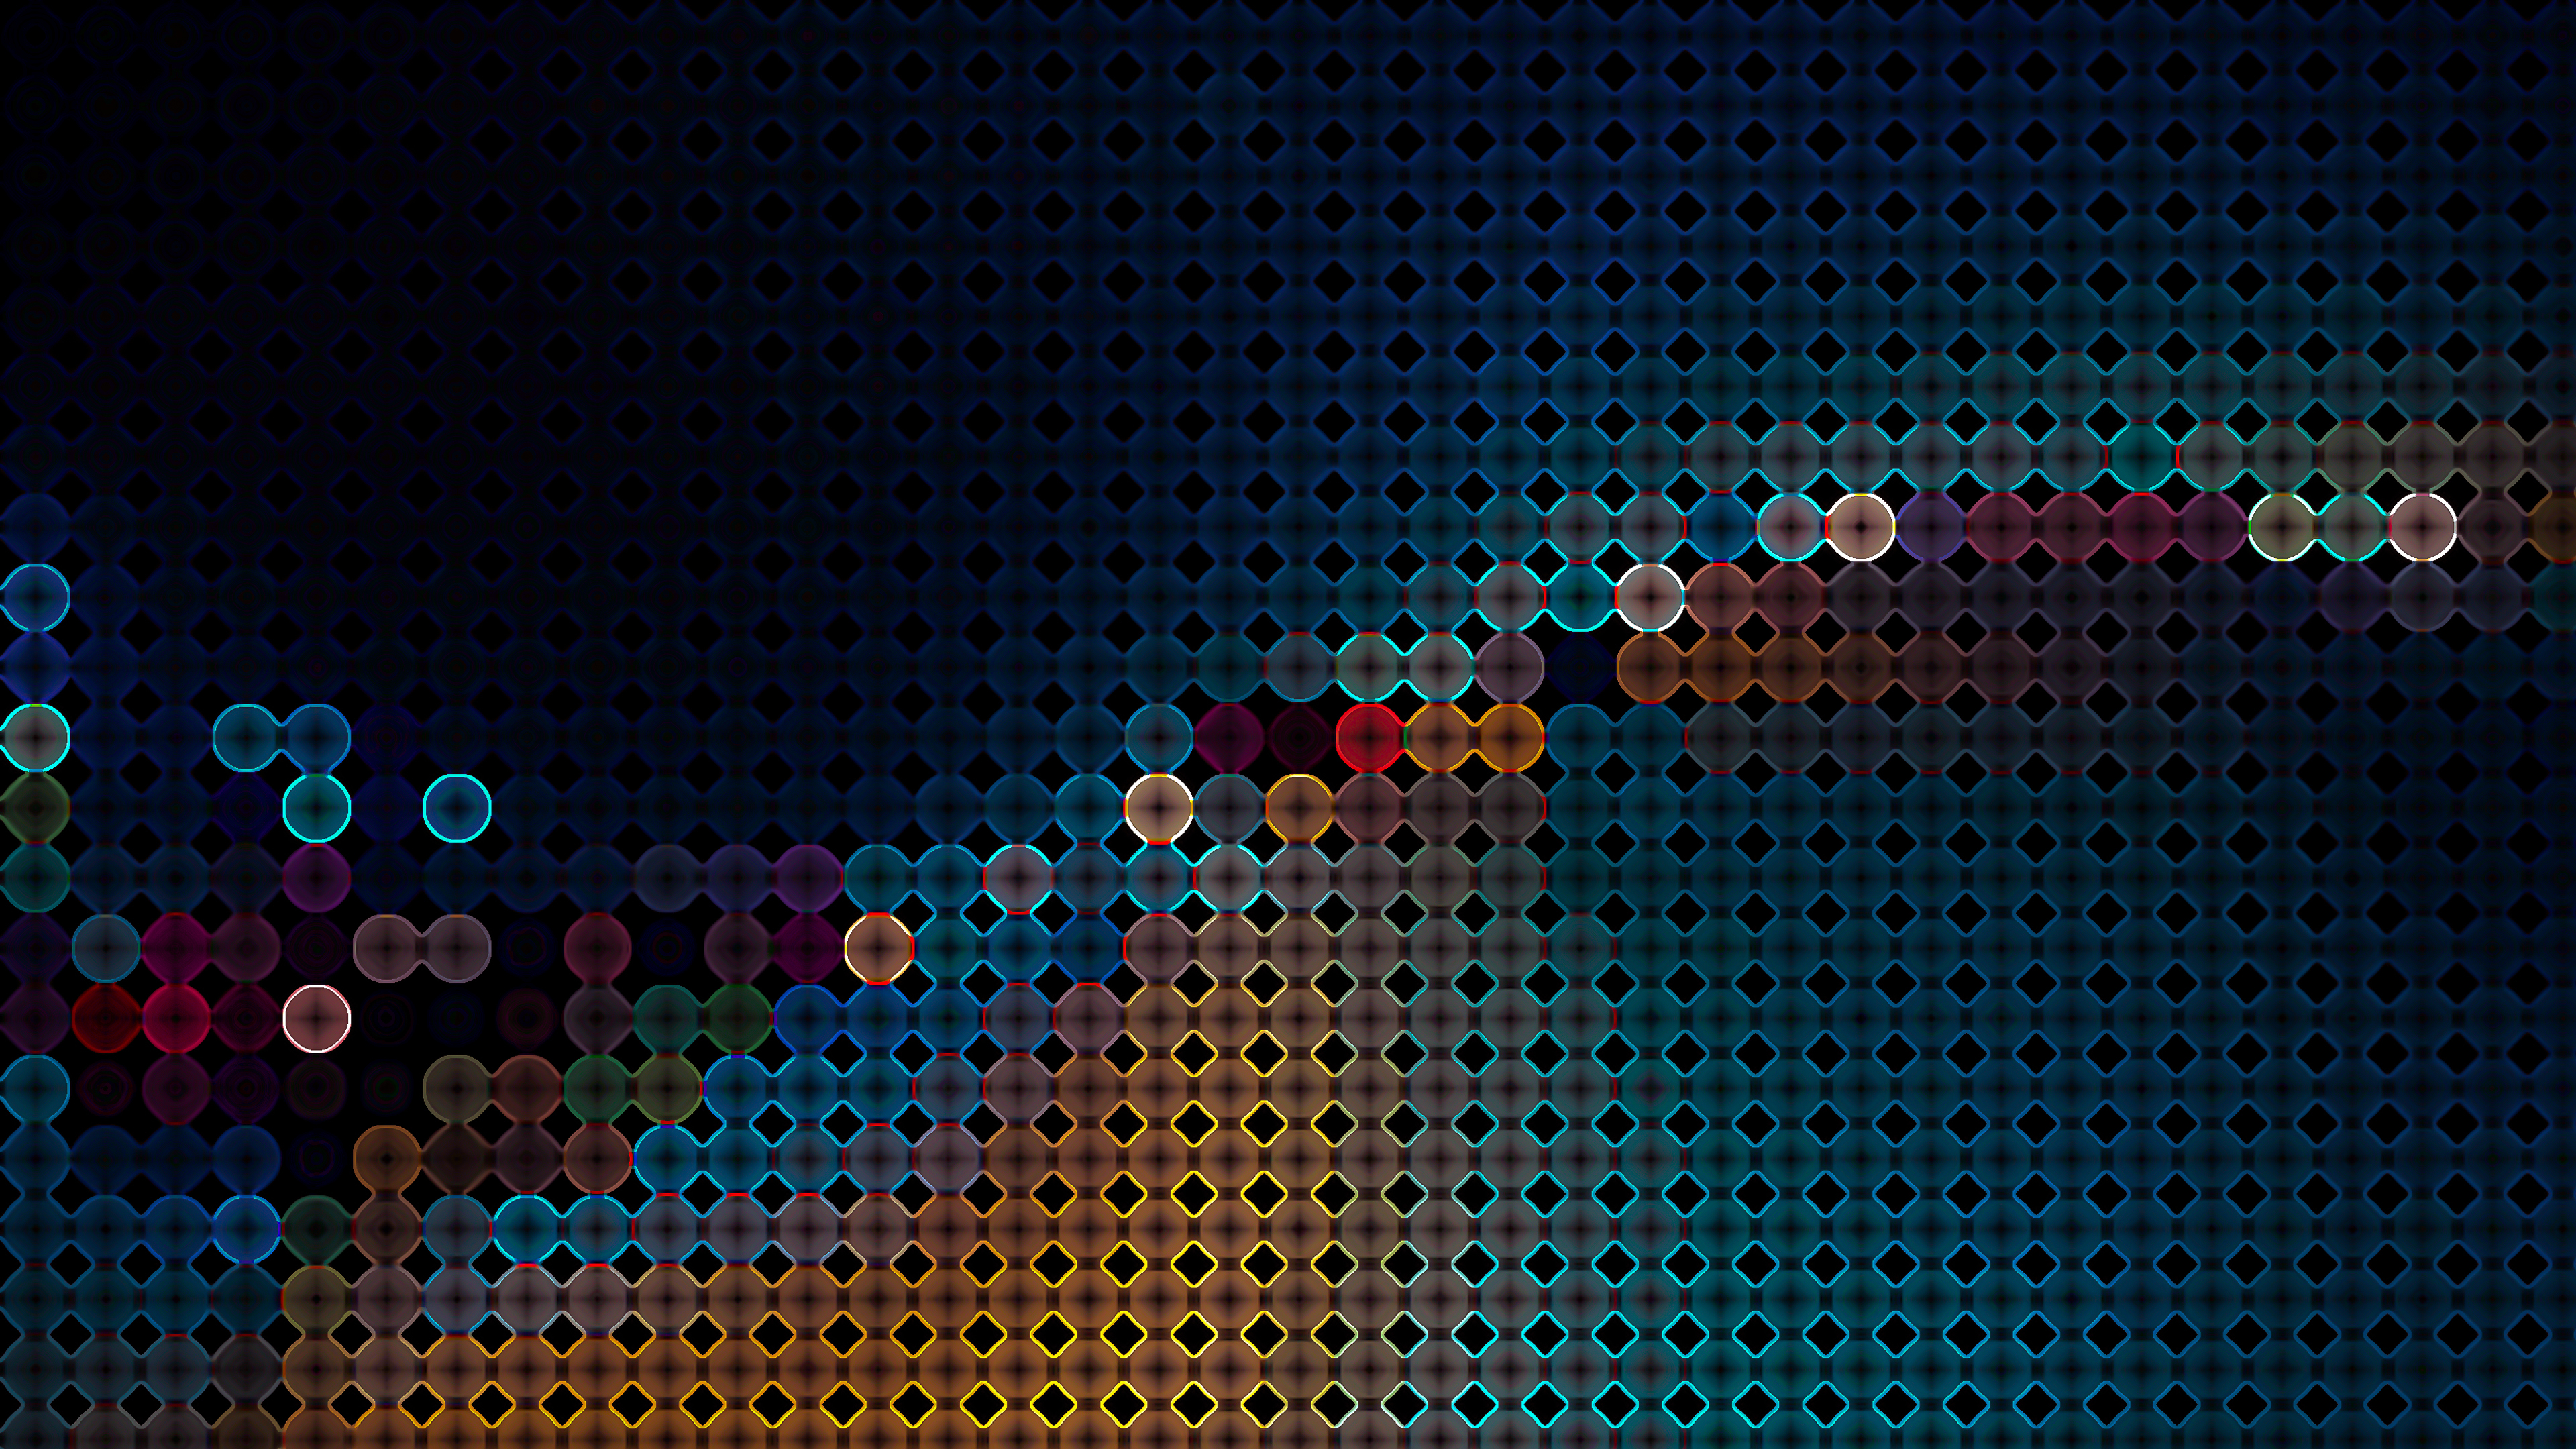 Abstract Technology Wallpaper 4k , HD Wallpaper & Backgrounds